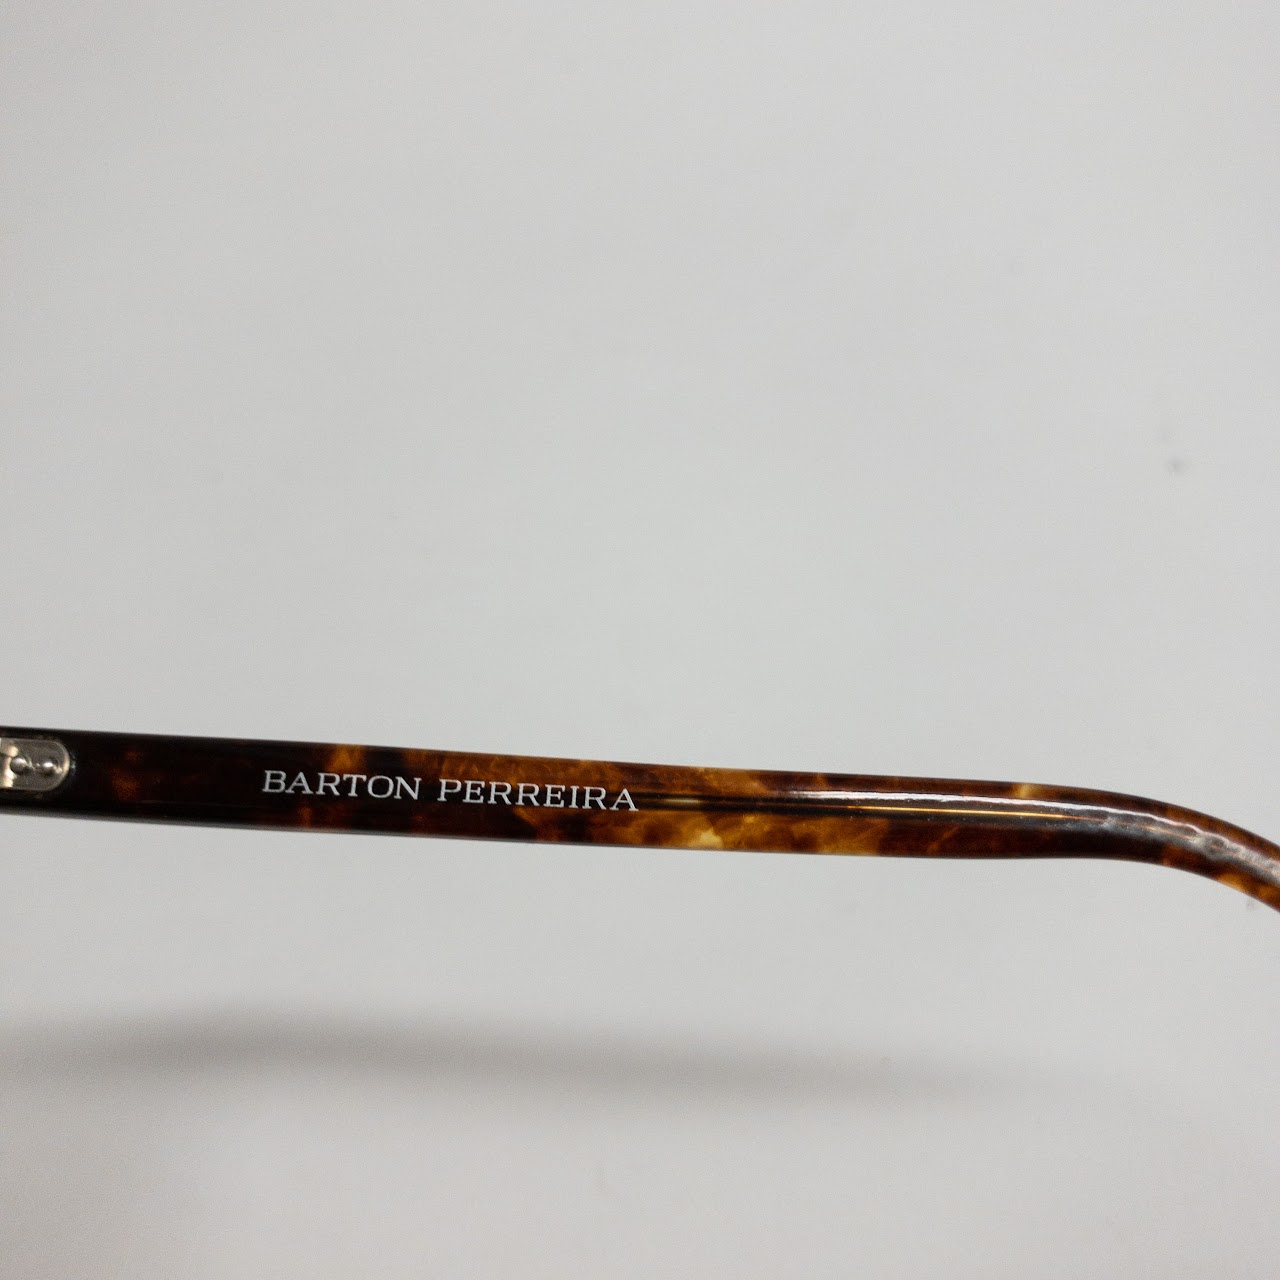 Barton Perreira Rx Eyeglasses